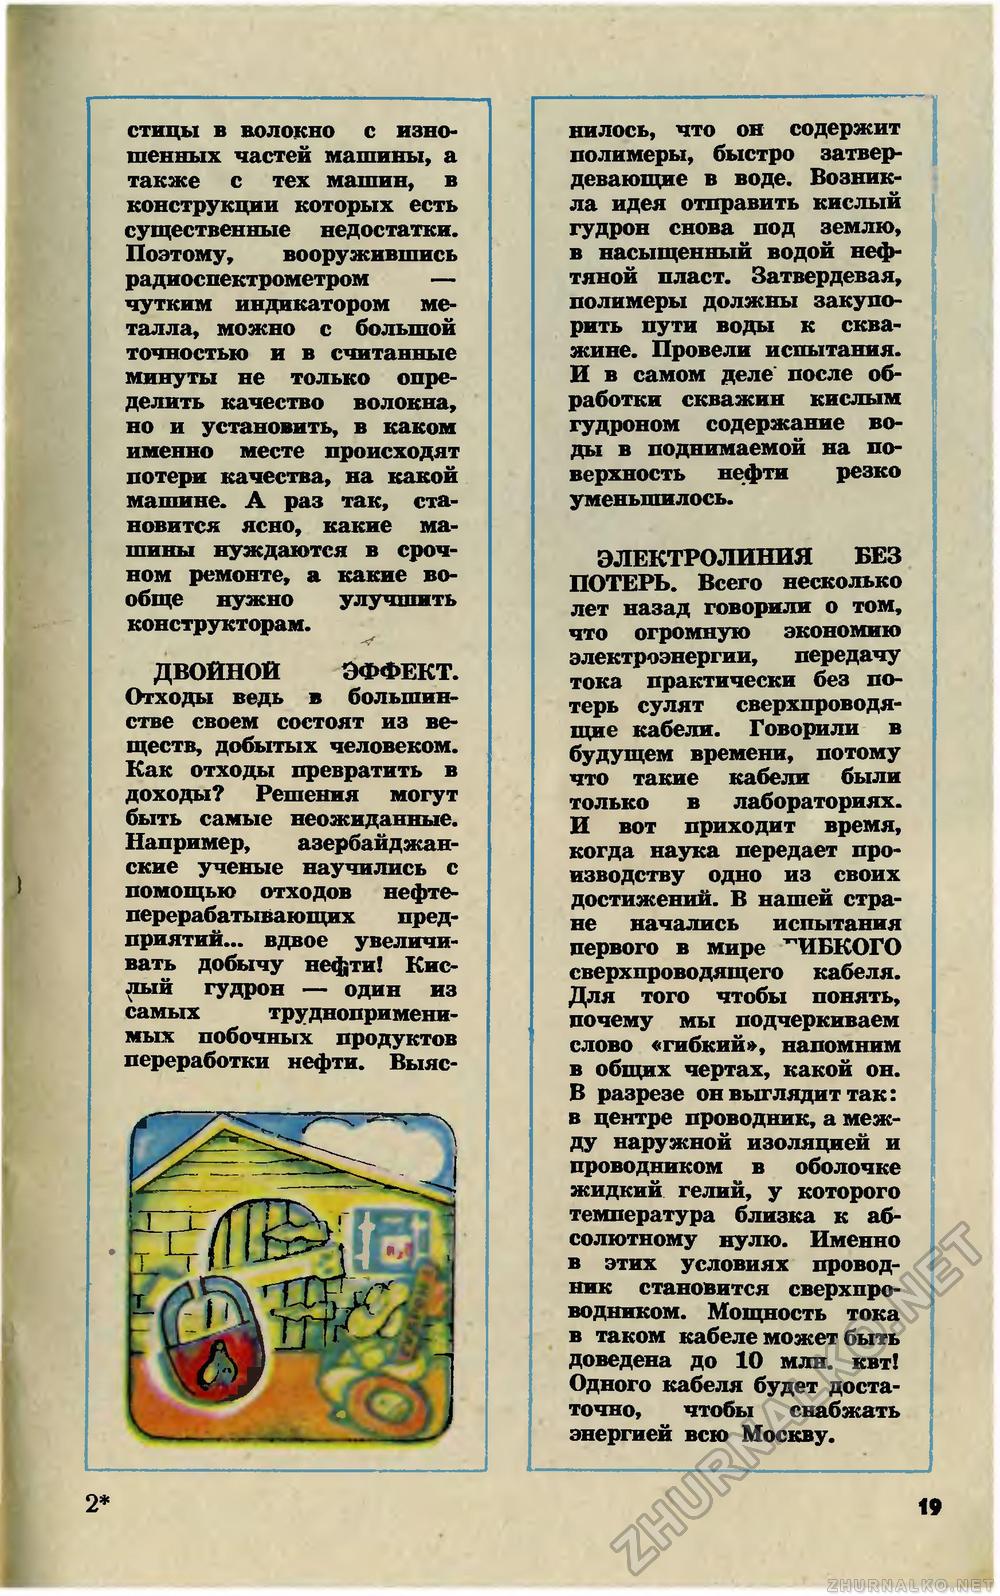   1982-04,  21